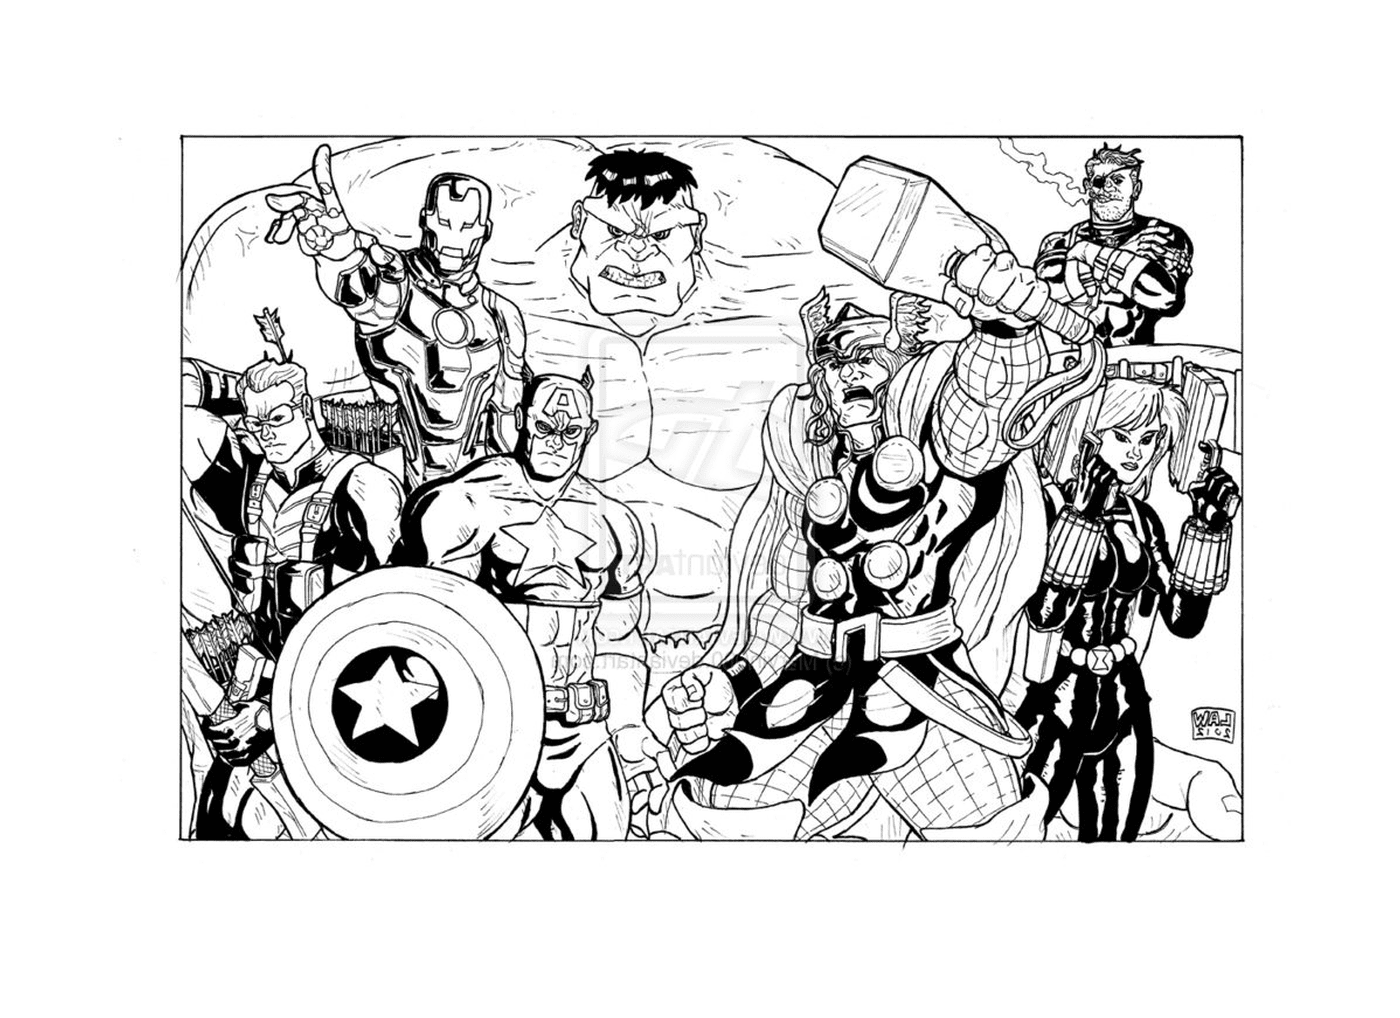   Un groupe de super-héros se tenant côte à côte 